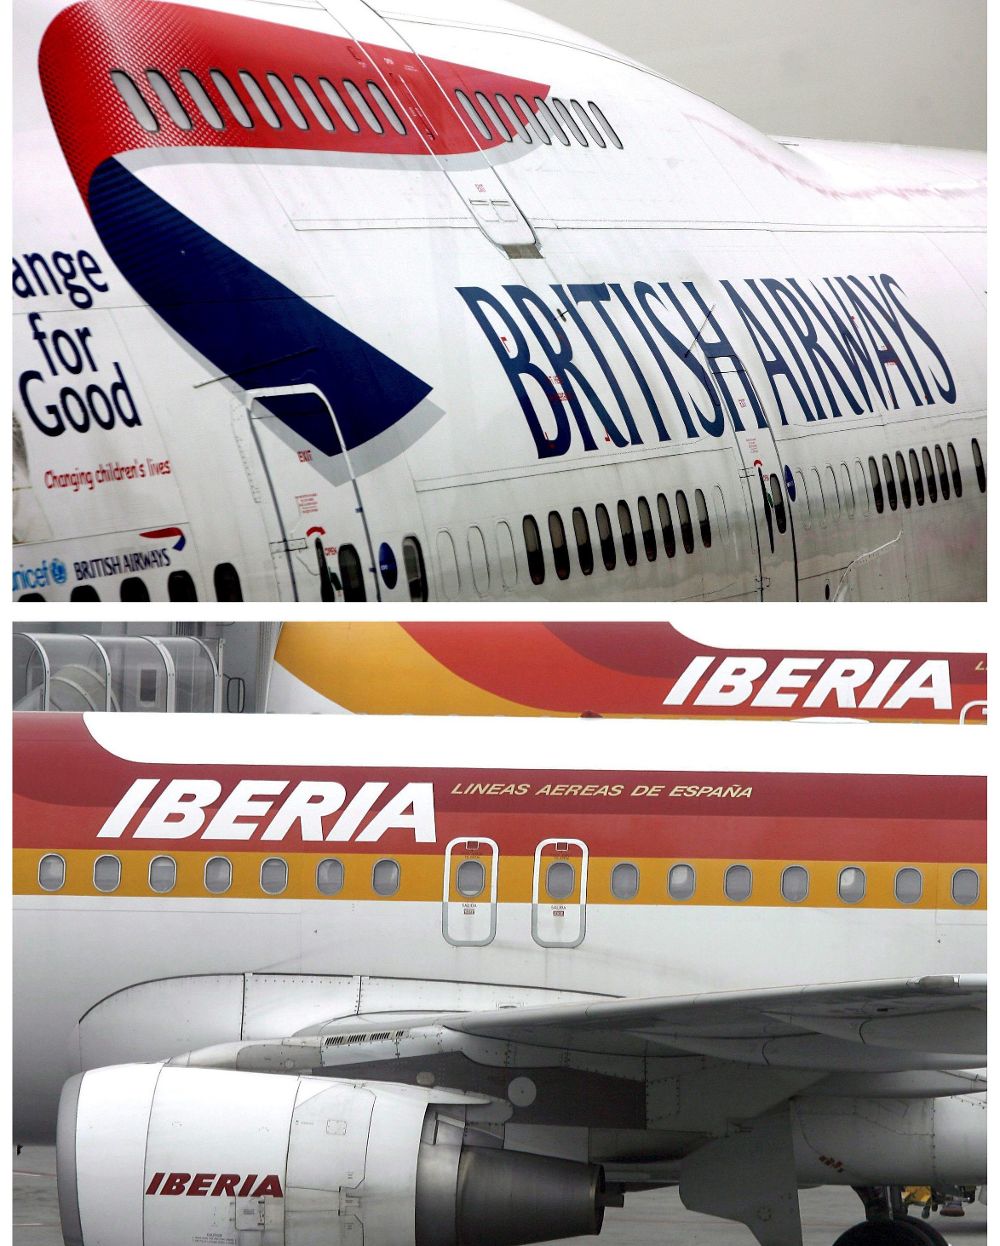 El grueso de IAG lo integran British Airways e Iberia.